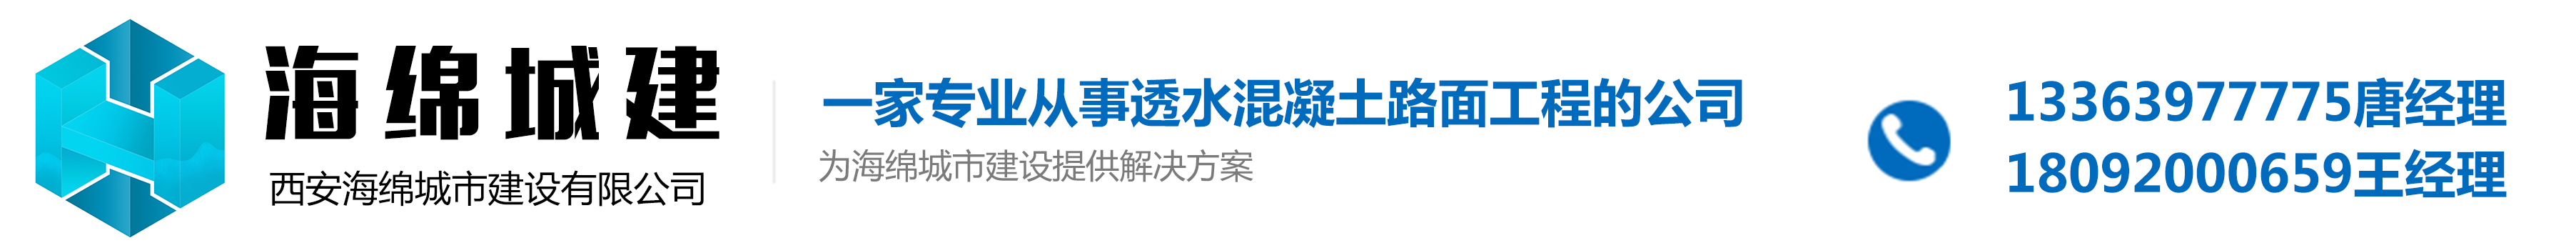 西安海绵城市建设公司_Logo